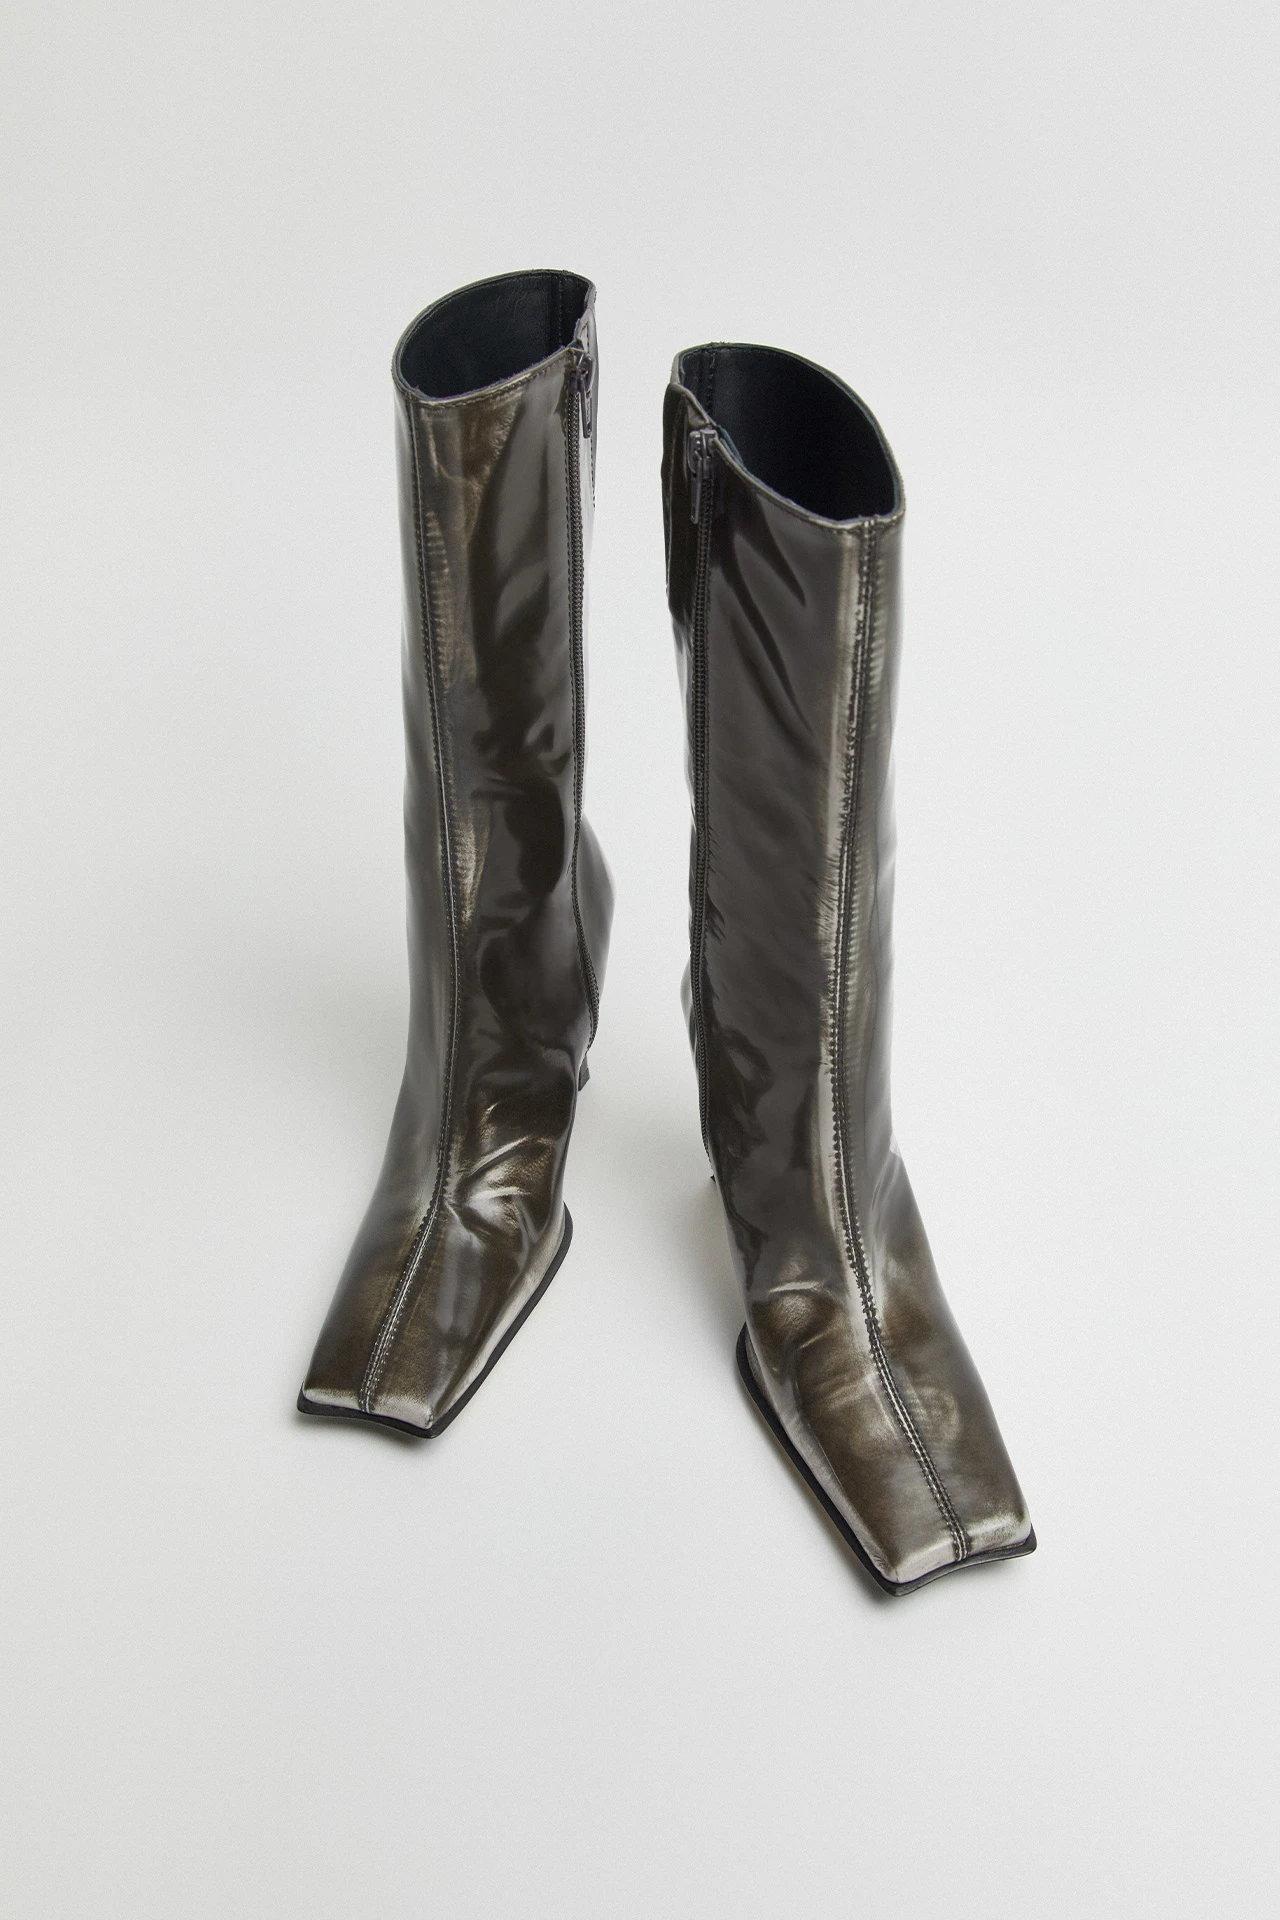 Miista-noor-grey-boots-04